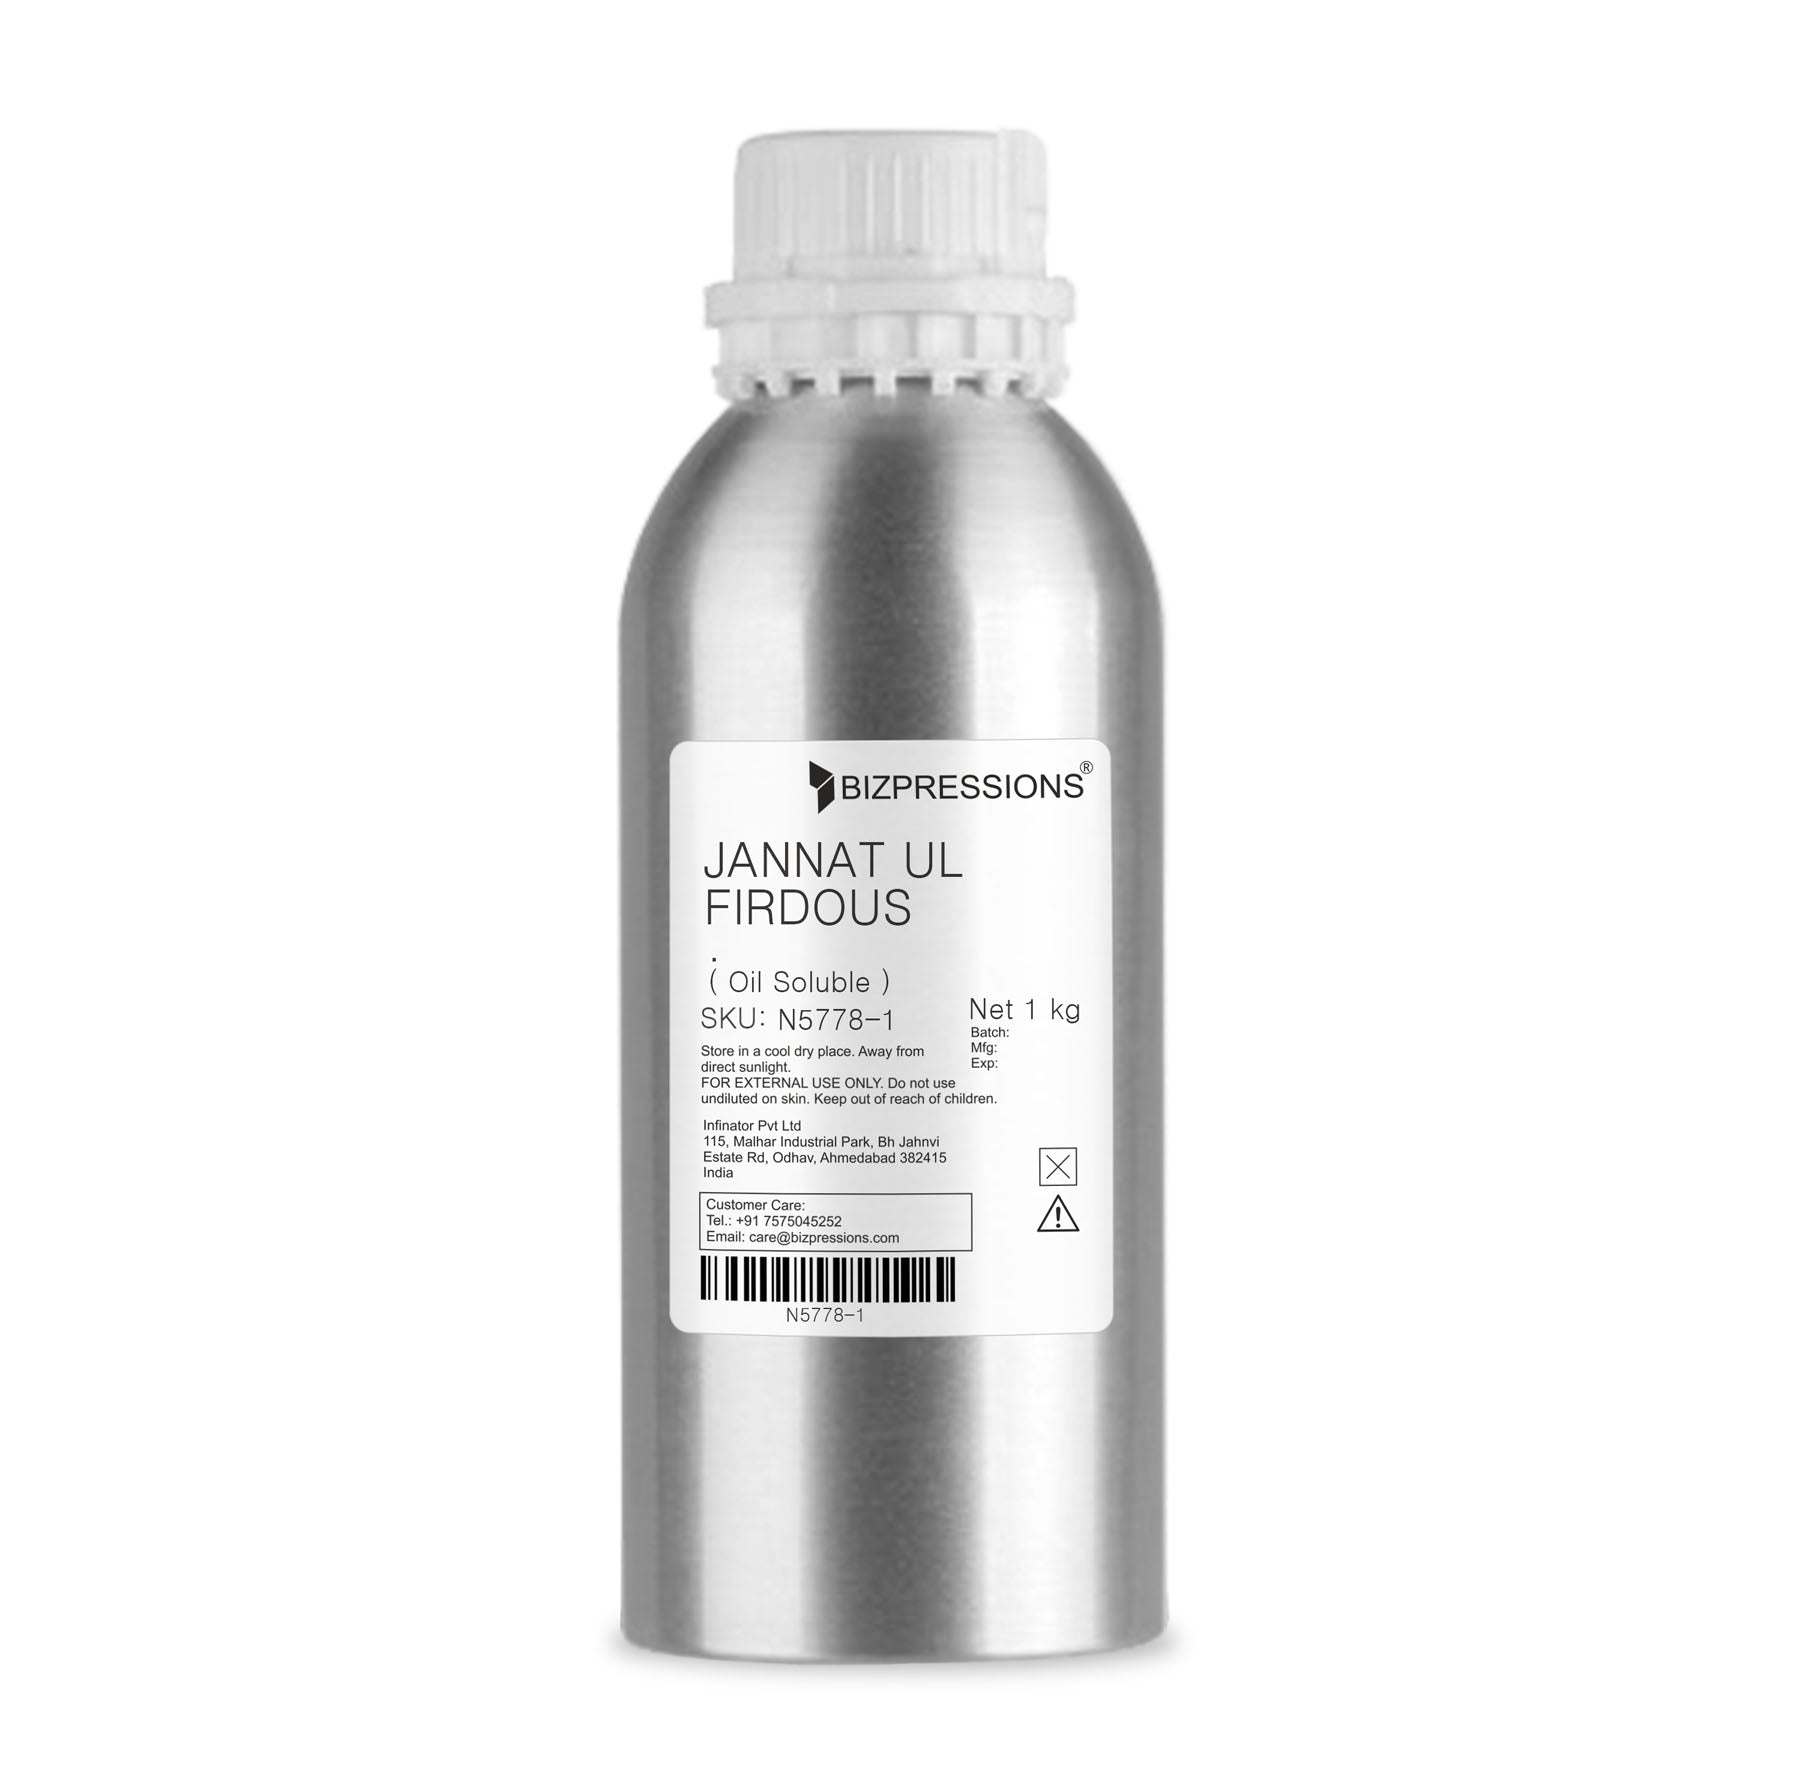 JANNAT UL FIRDOUS - Fragrance ( Oil Soluble ) - 1 kg